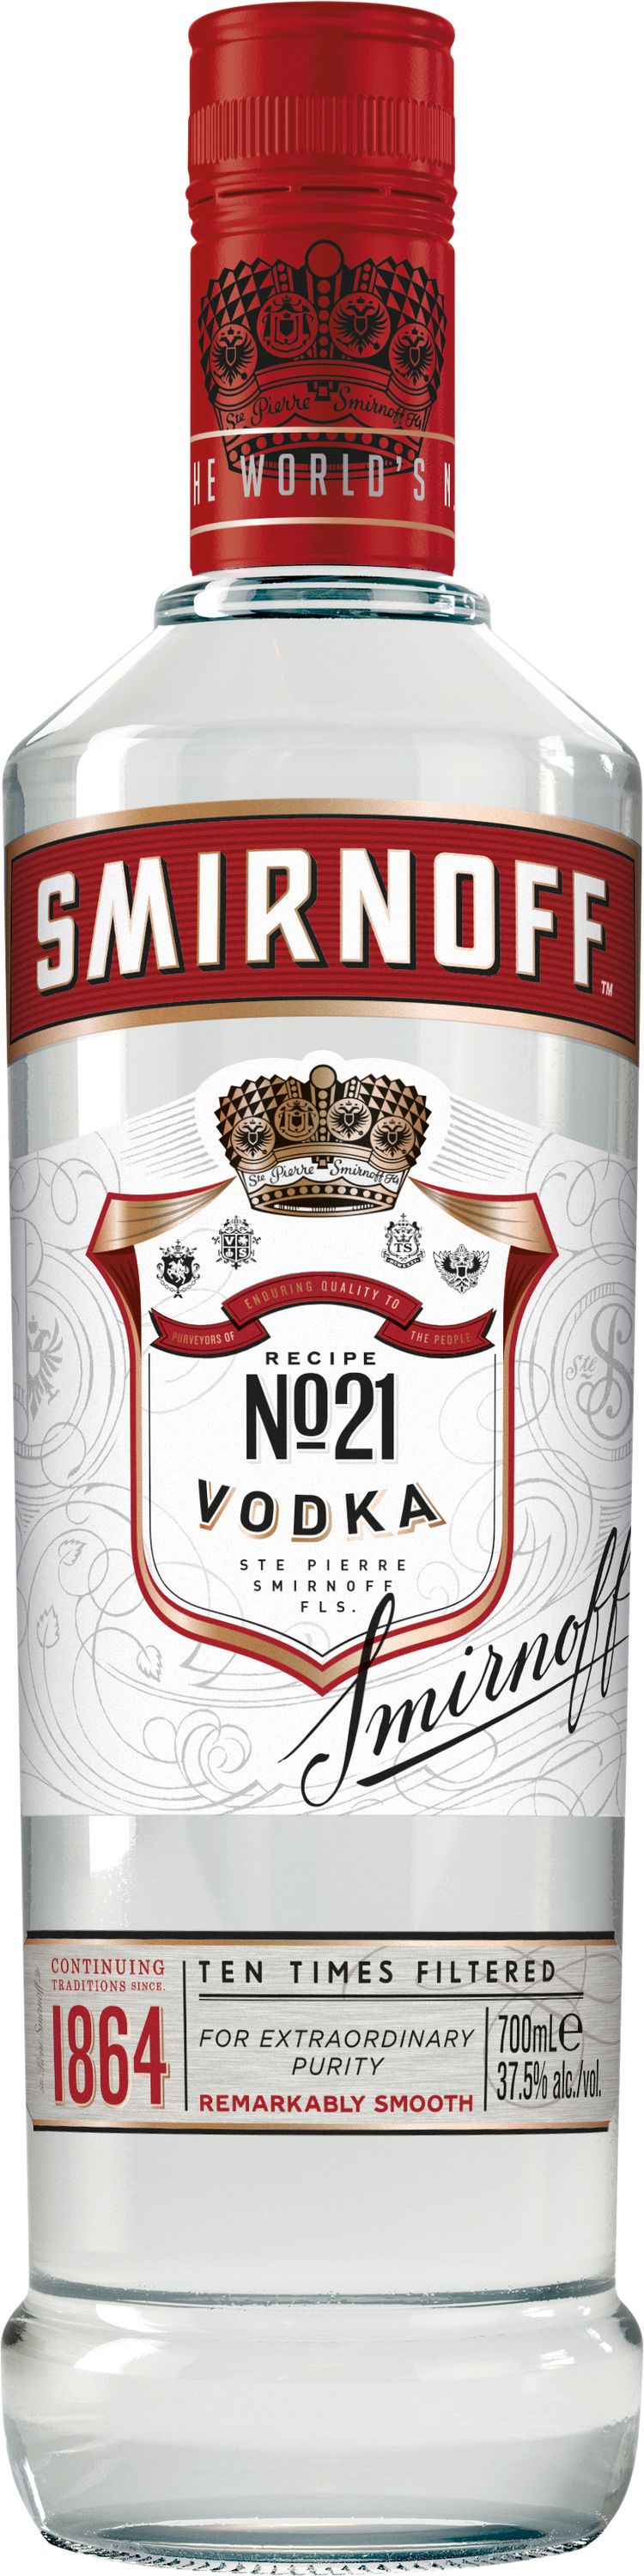 Smirnoff Vodka Red Label 37,5% Vol. 1000ml | Mega-Einkaufsparadies